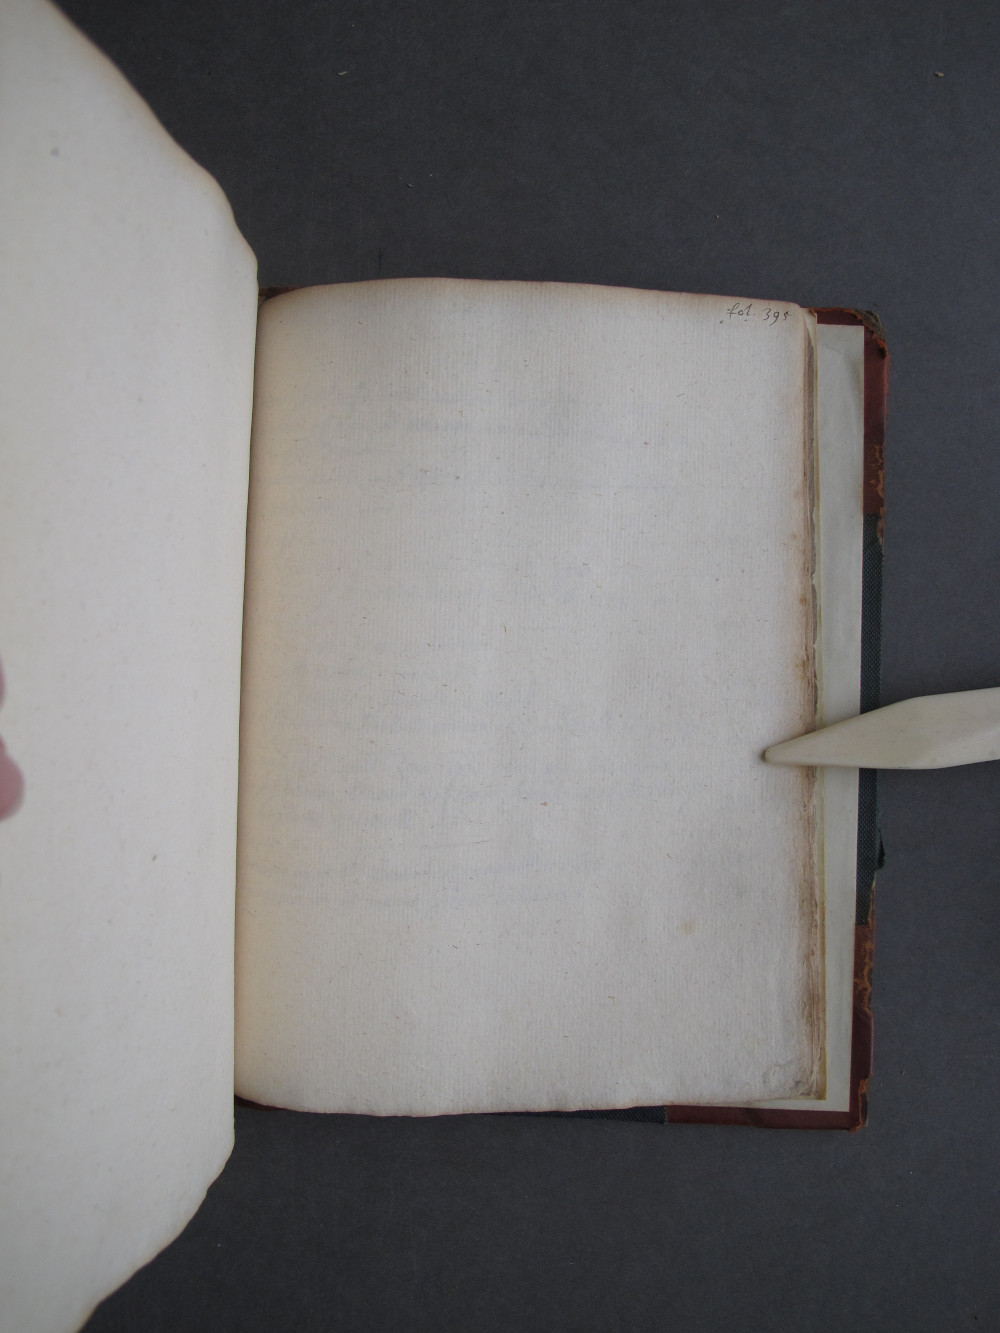 Folio 395 recto